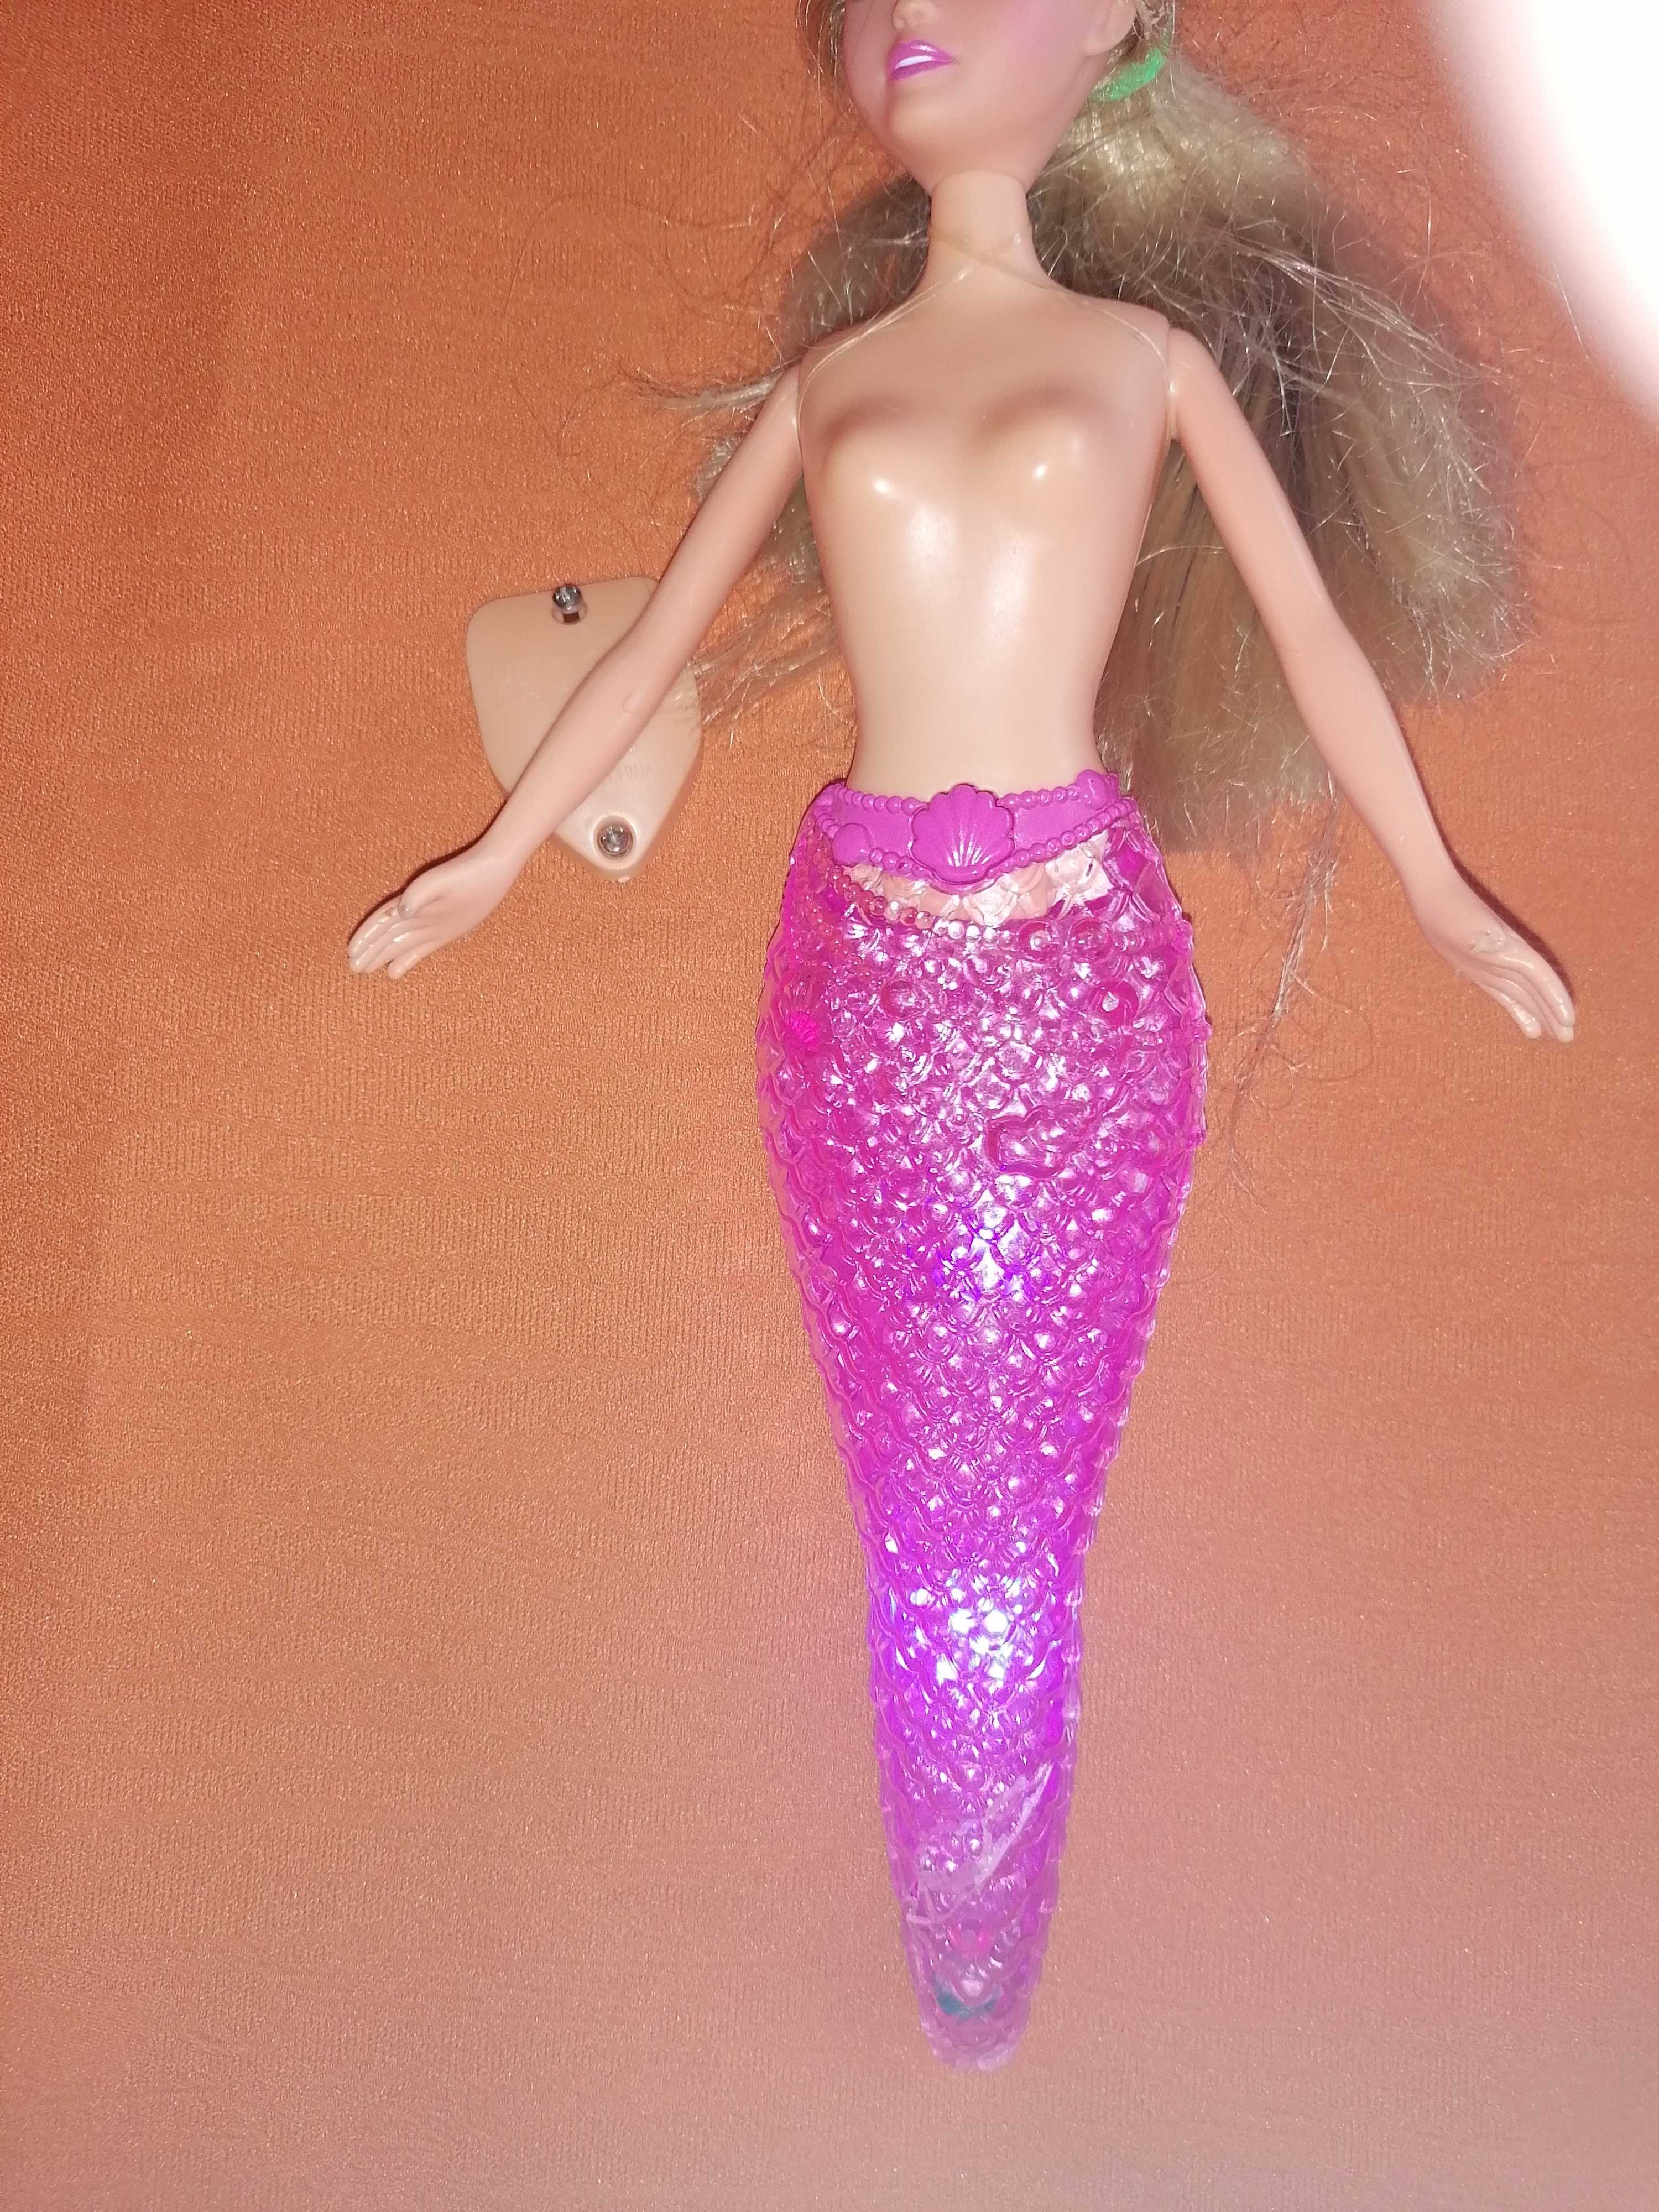 Barbie Lalka syrenka ze zmianą koloru.